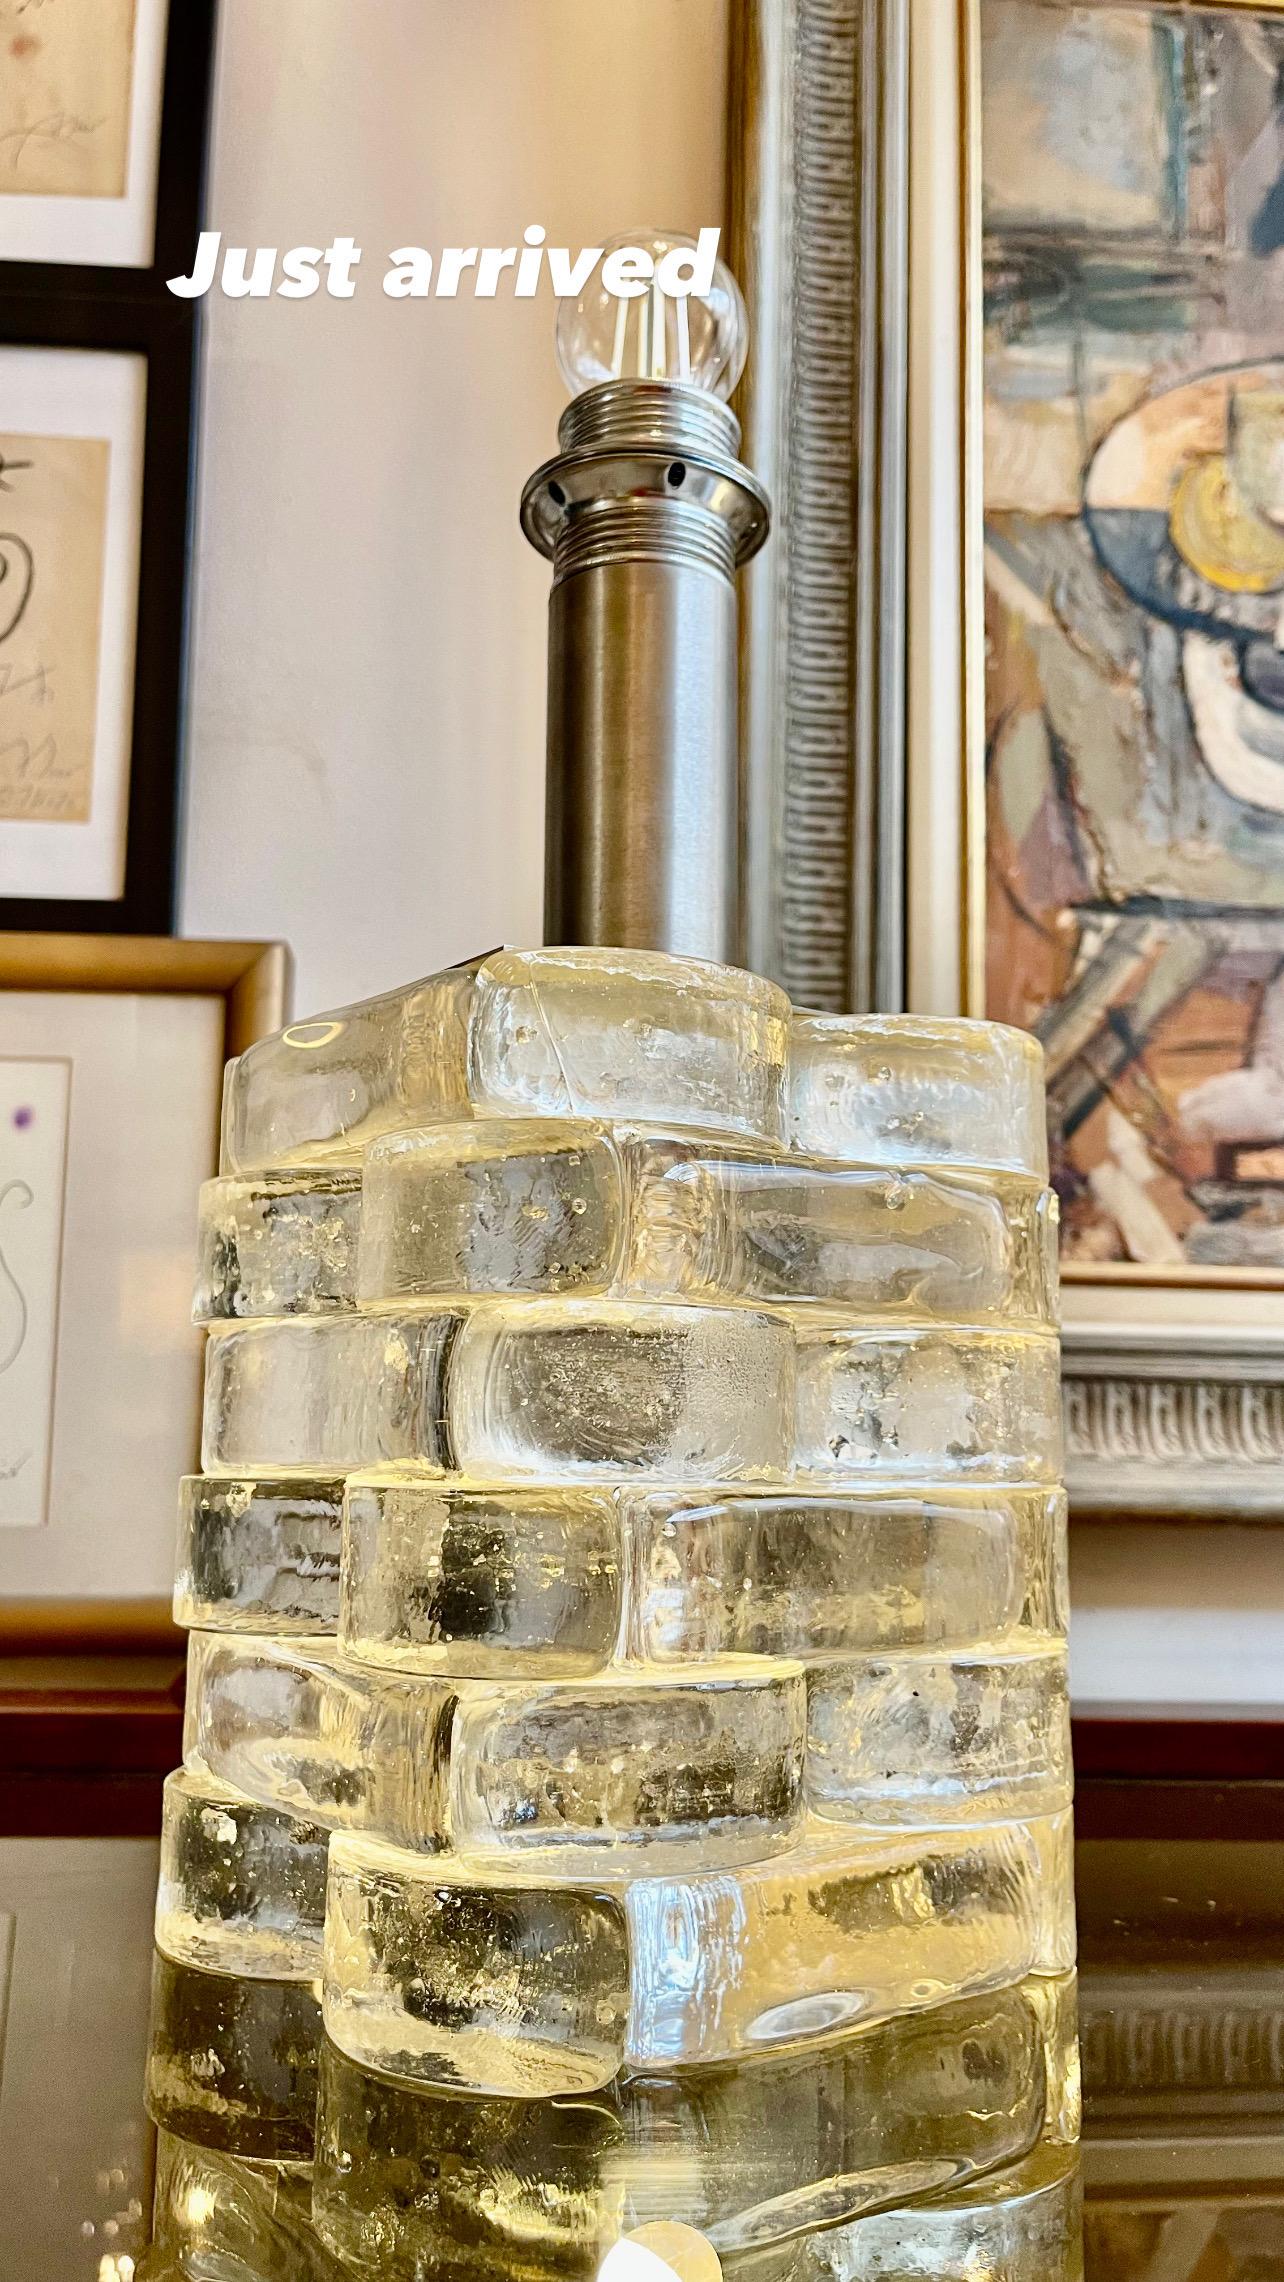 Exceptionnelle lampe de table Poliarte en verre de Murano avec structure en inox. Le design et la qualité du verre font de cette pièce le meilleur du design italien.
Cette POLIARTE unique en glace et en verre transparent de Murano est